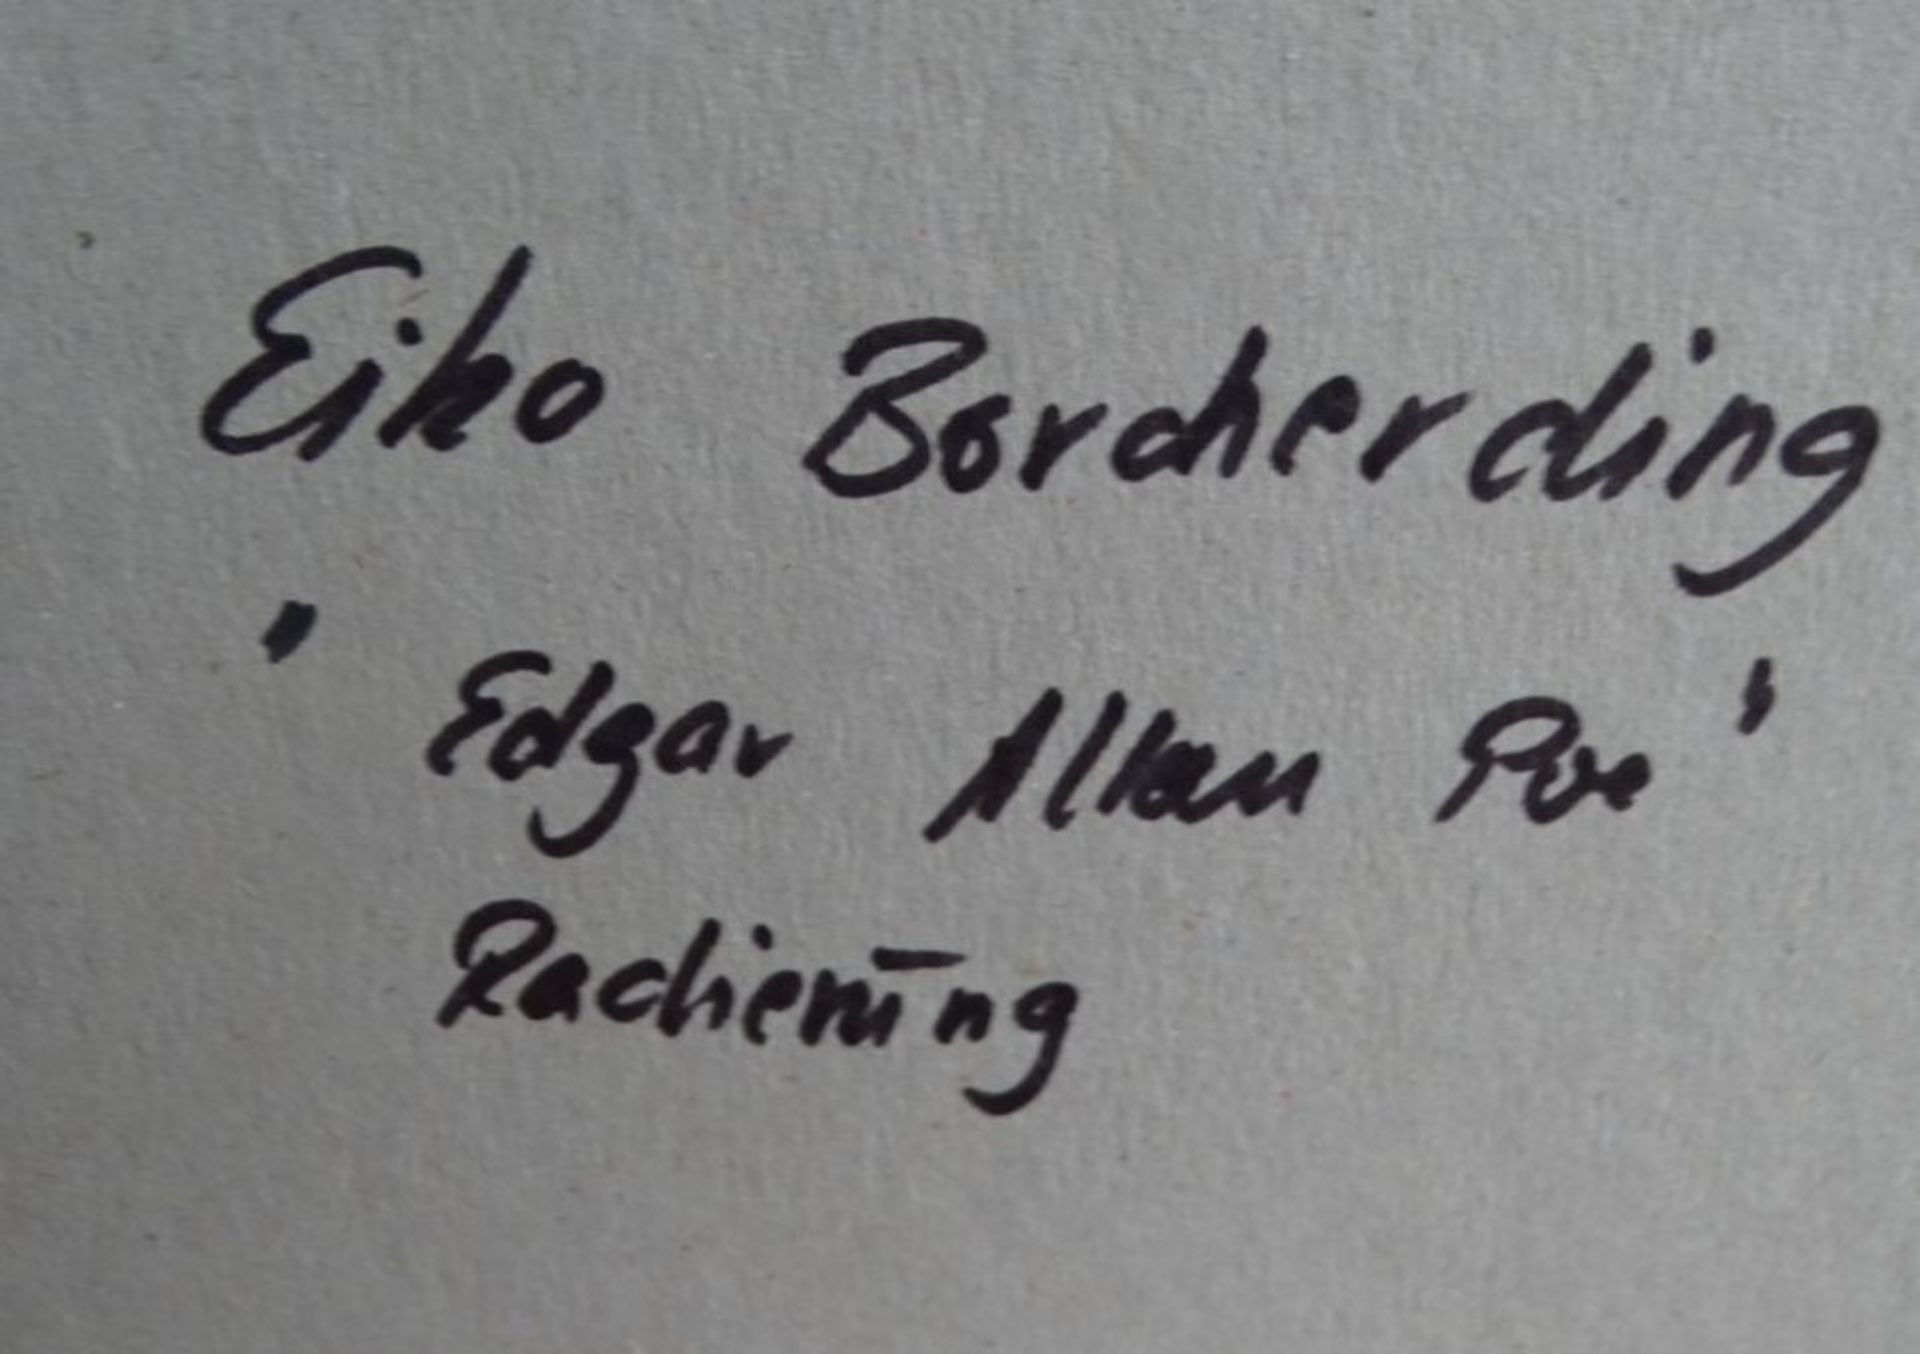 Eiko Borcherding , 2005 "Edgar Alan Poe" orig. Radierung, ger/Glas, RG 58x48 cm - Bild 7 aus 7